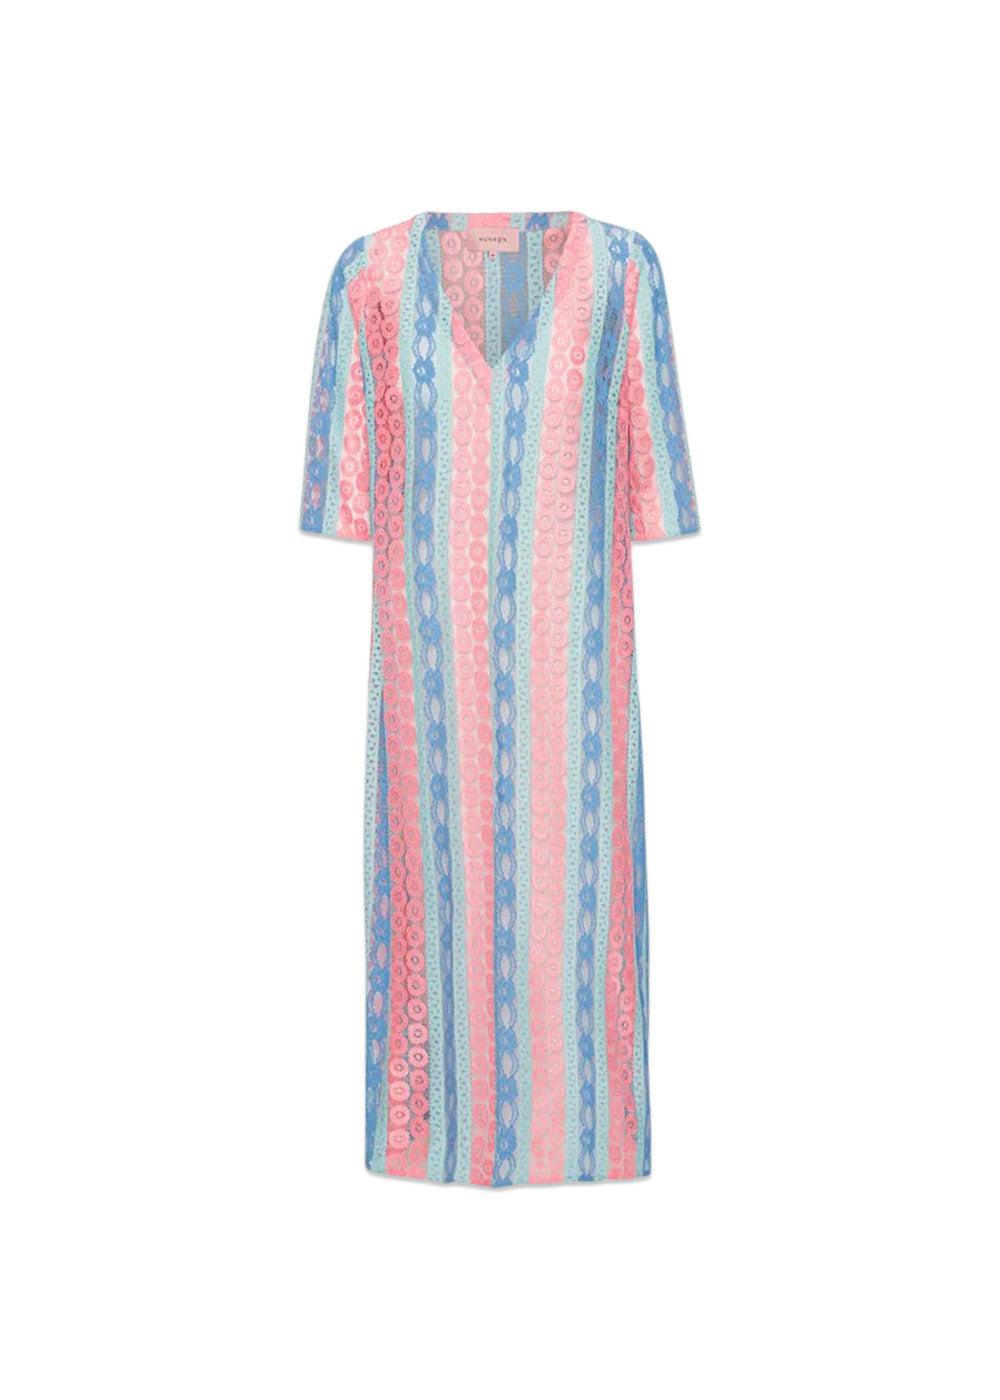 HUNKØN's Yvonne Dress - Pink And Blue. Køb kjoler her.